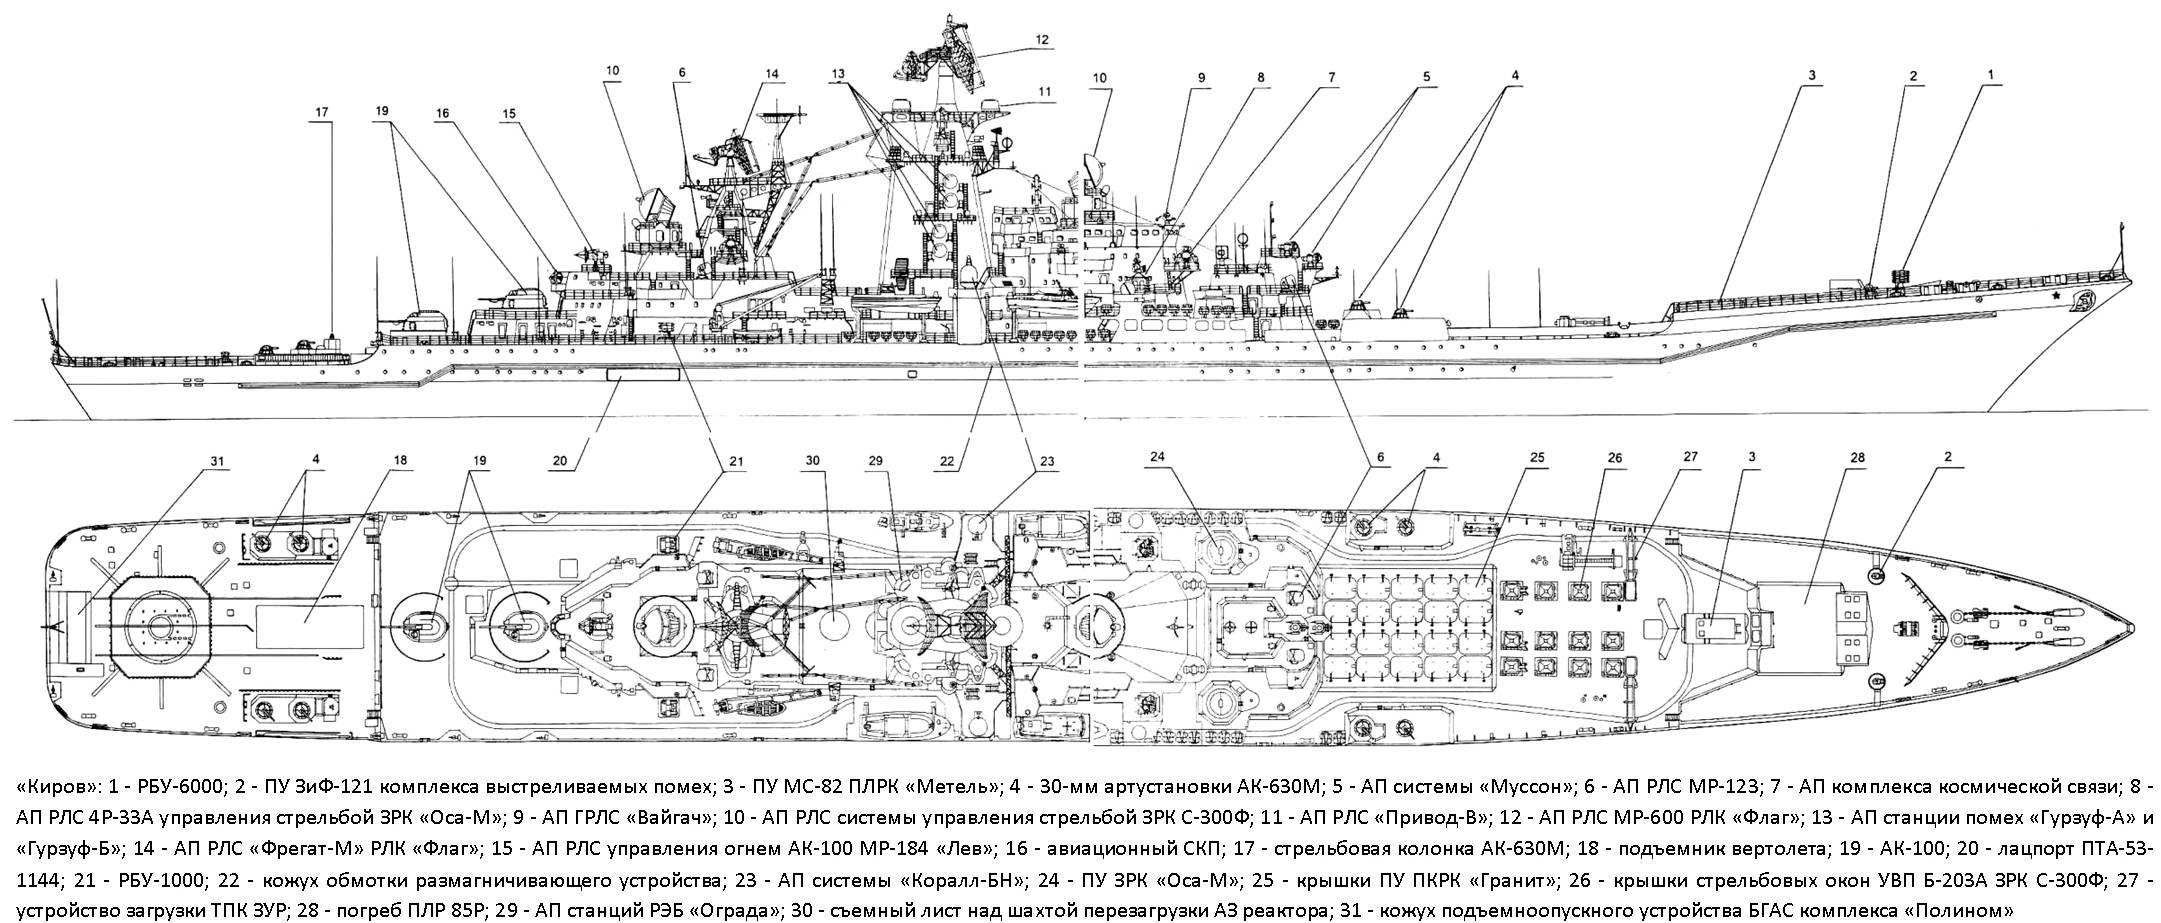 Крейсера проекта 1144 «орлан» - вики